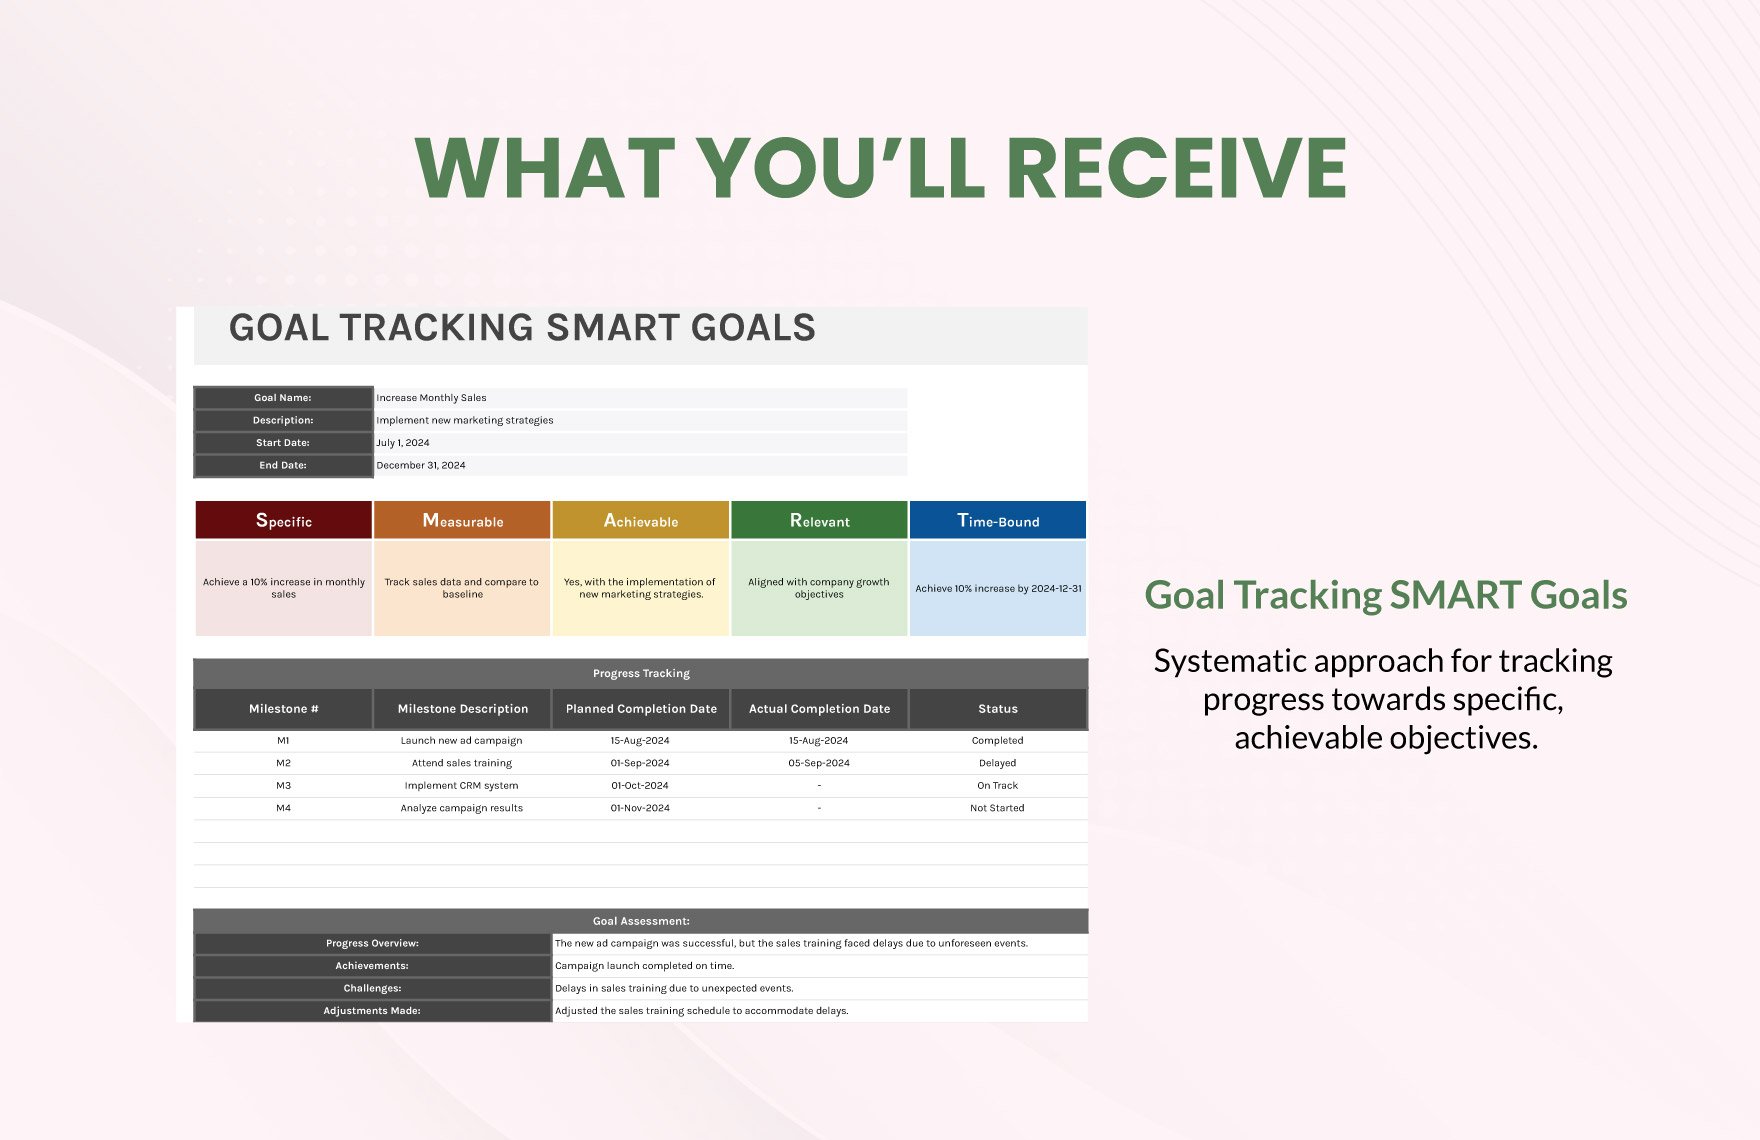 Goal Tracking Smart Goals Template